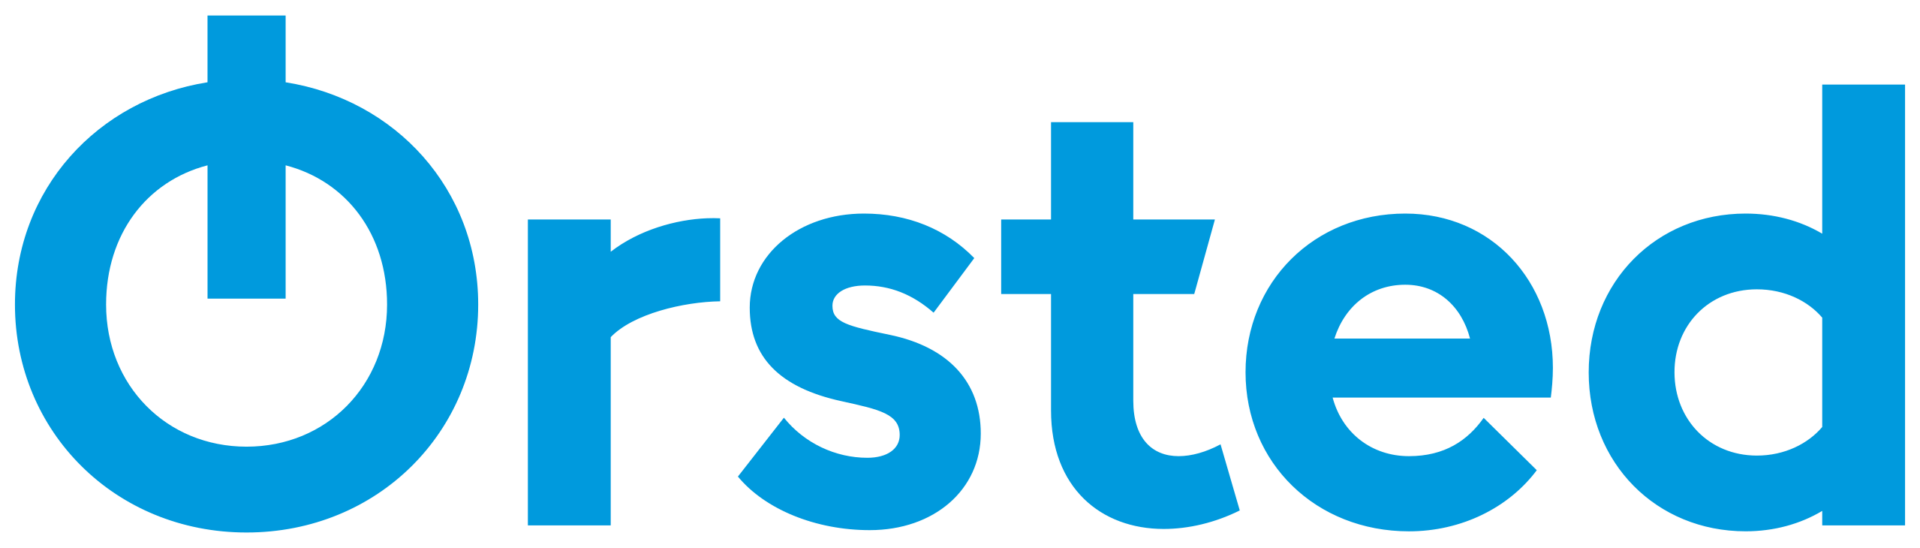 Ørsted_logo.svg